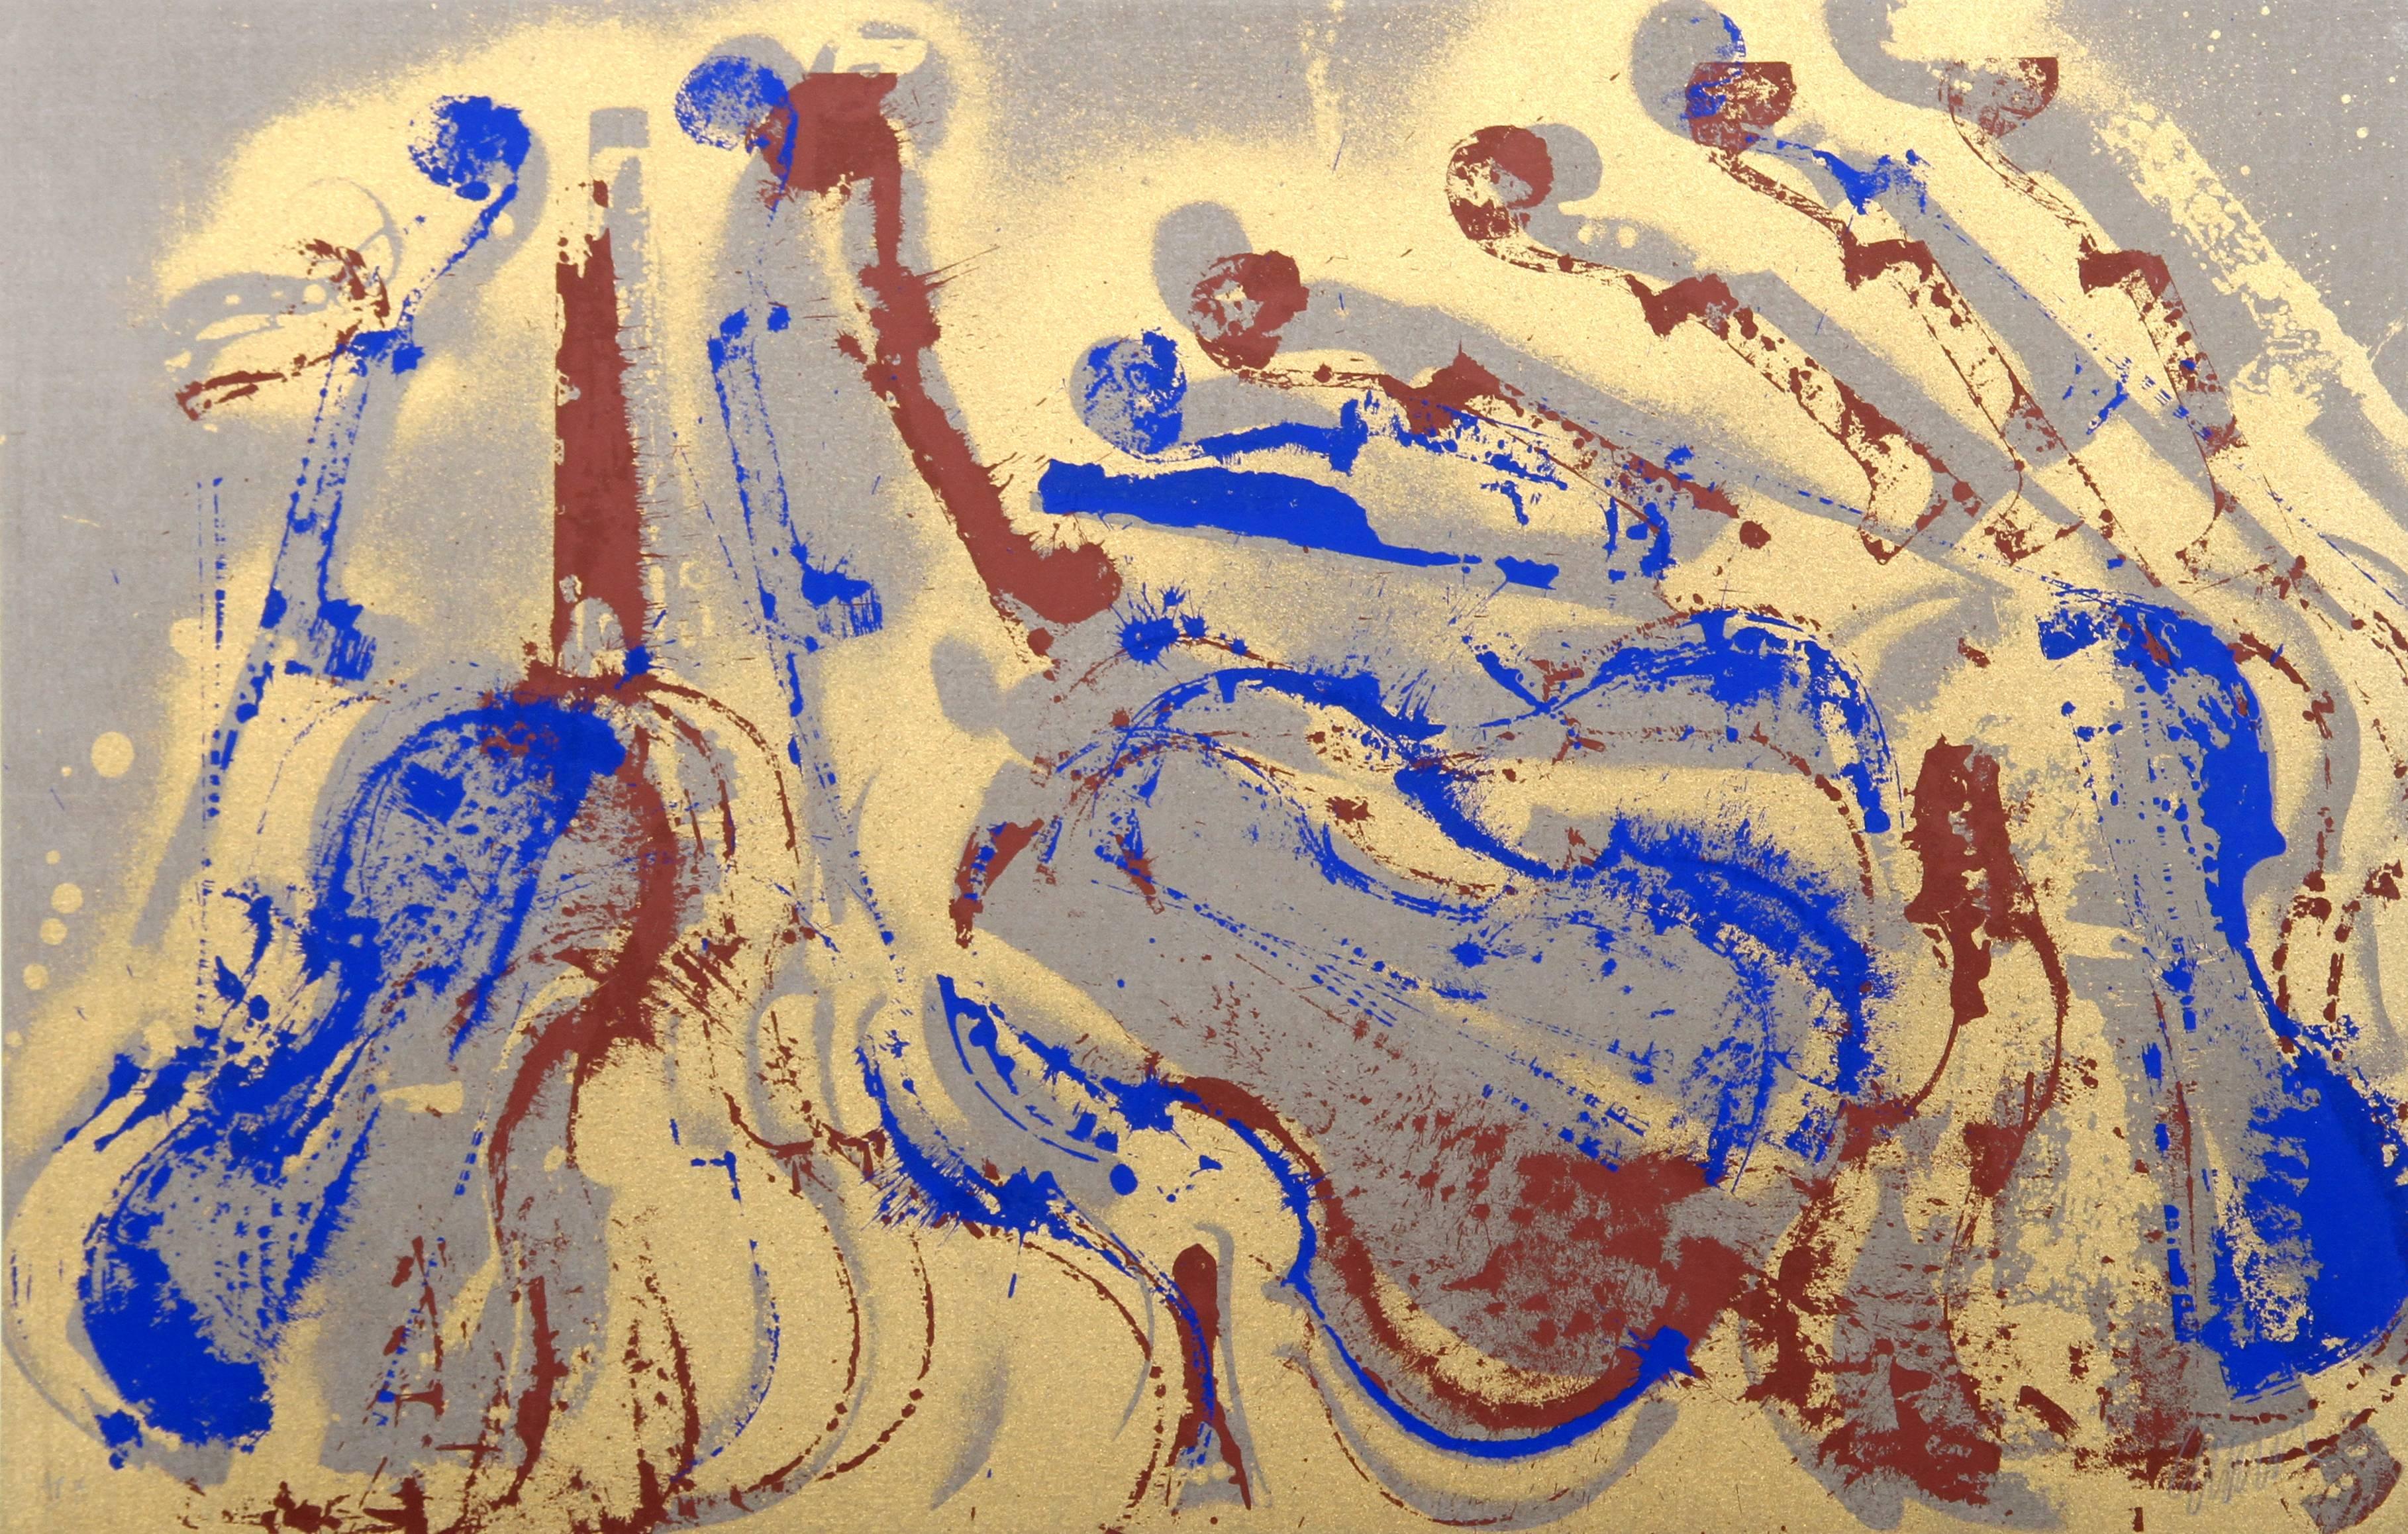 Cavalcade, Abstract Silkscreen by Arman